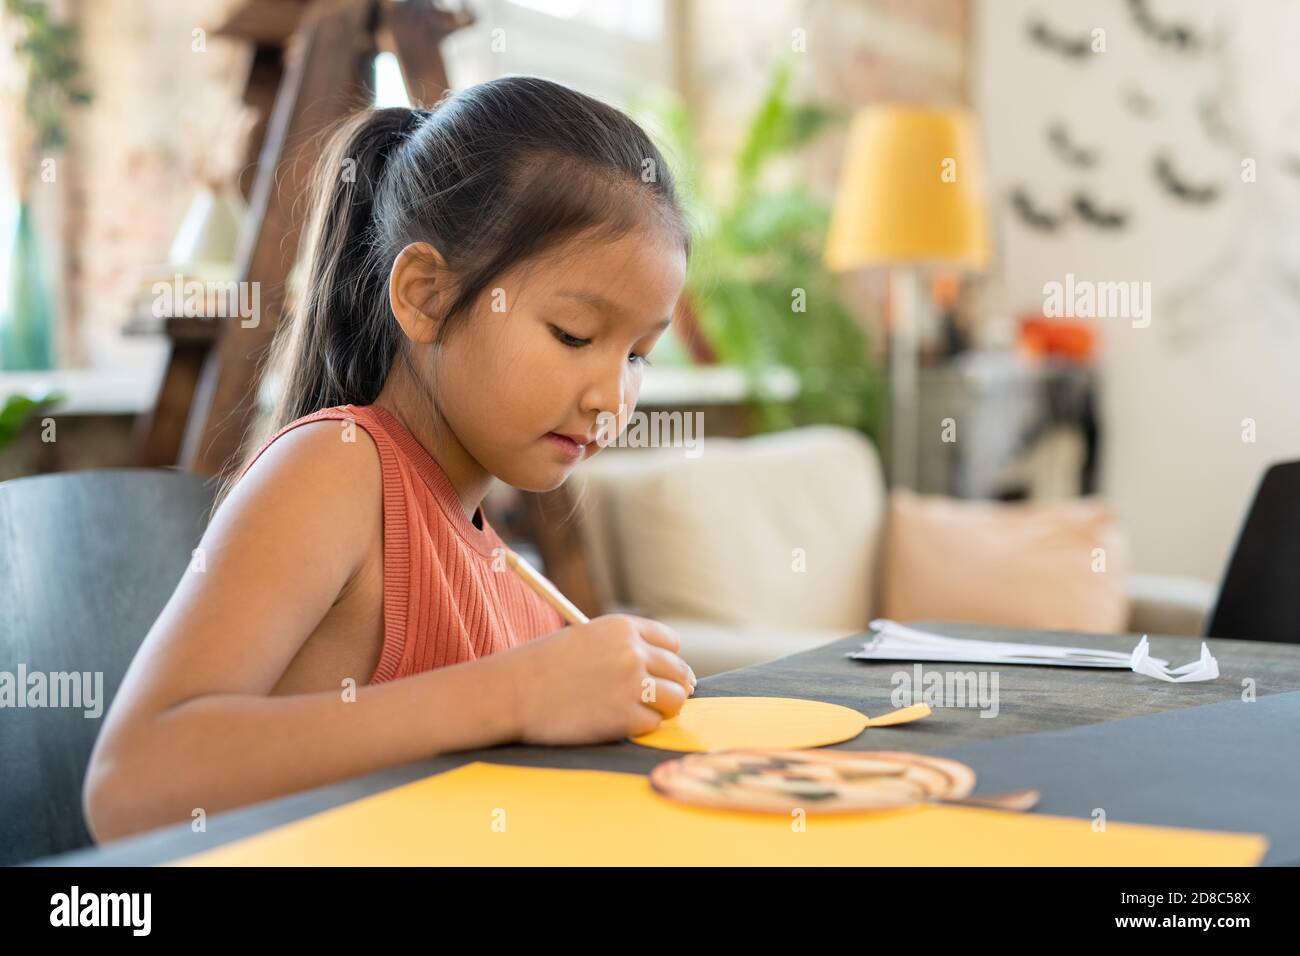 Une jeune fille asiatique créative concentrée assise à table et faisant du papier Artisanat de citrouille pour Halloween en studio d'art Banque D'Images